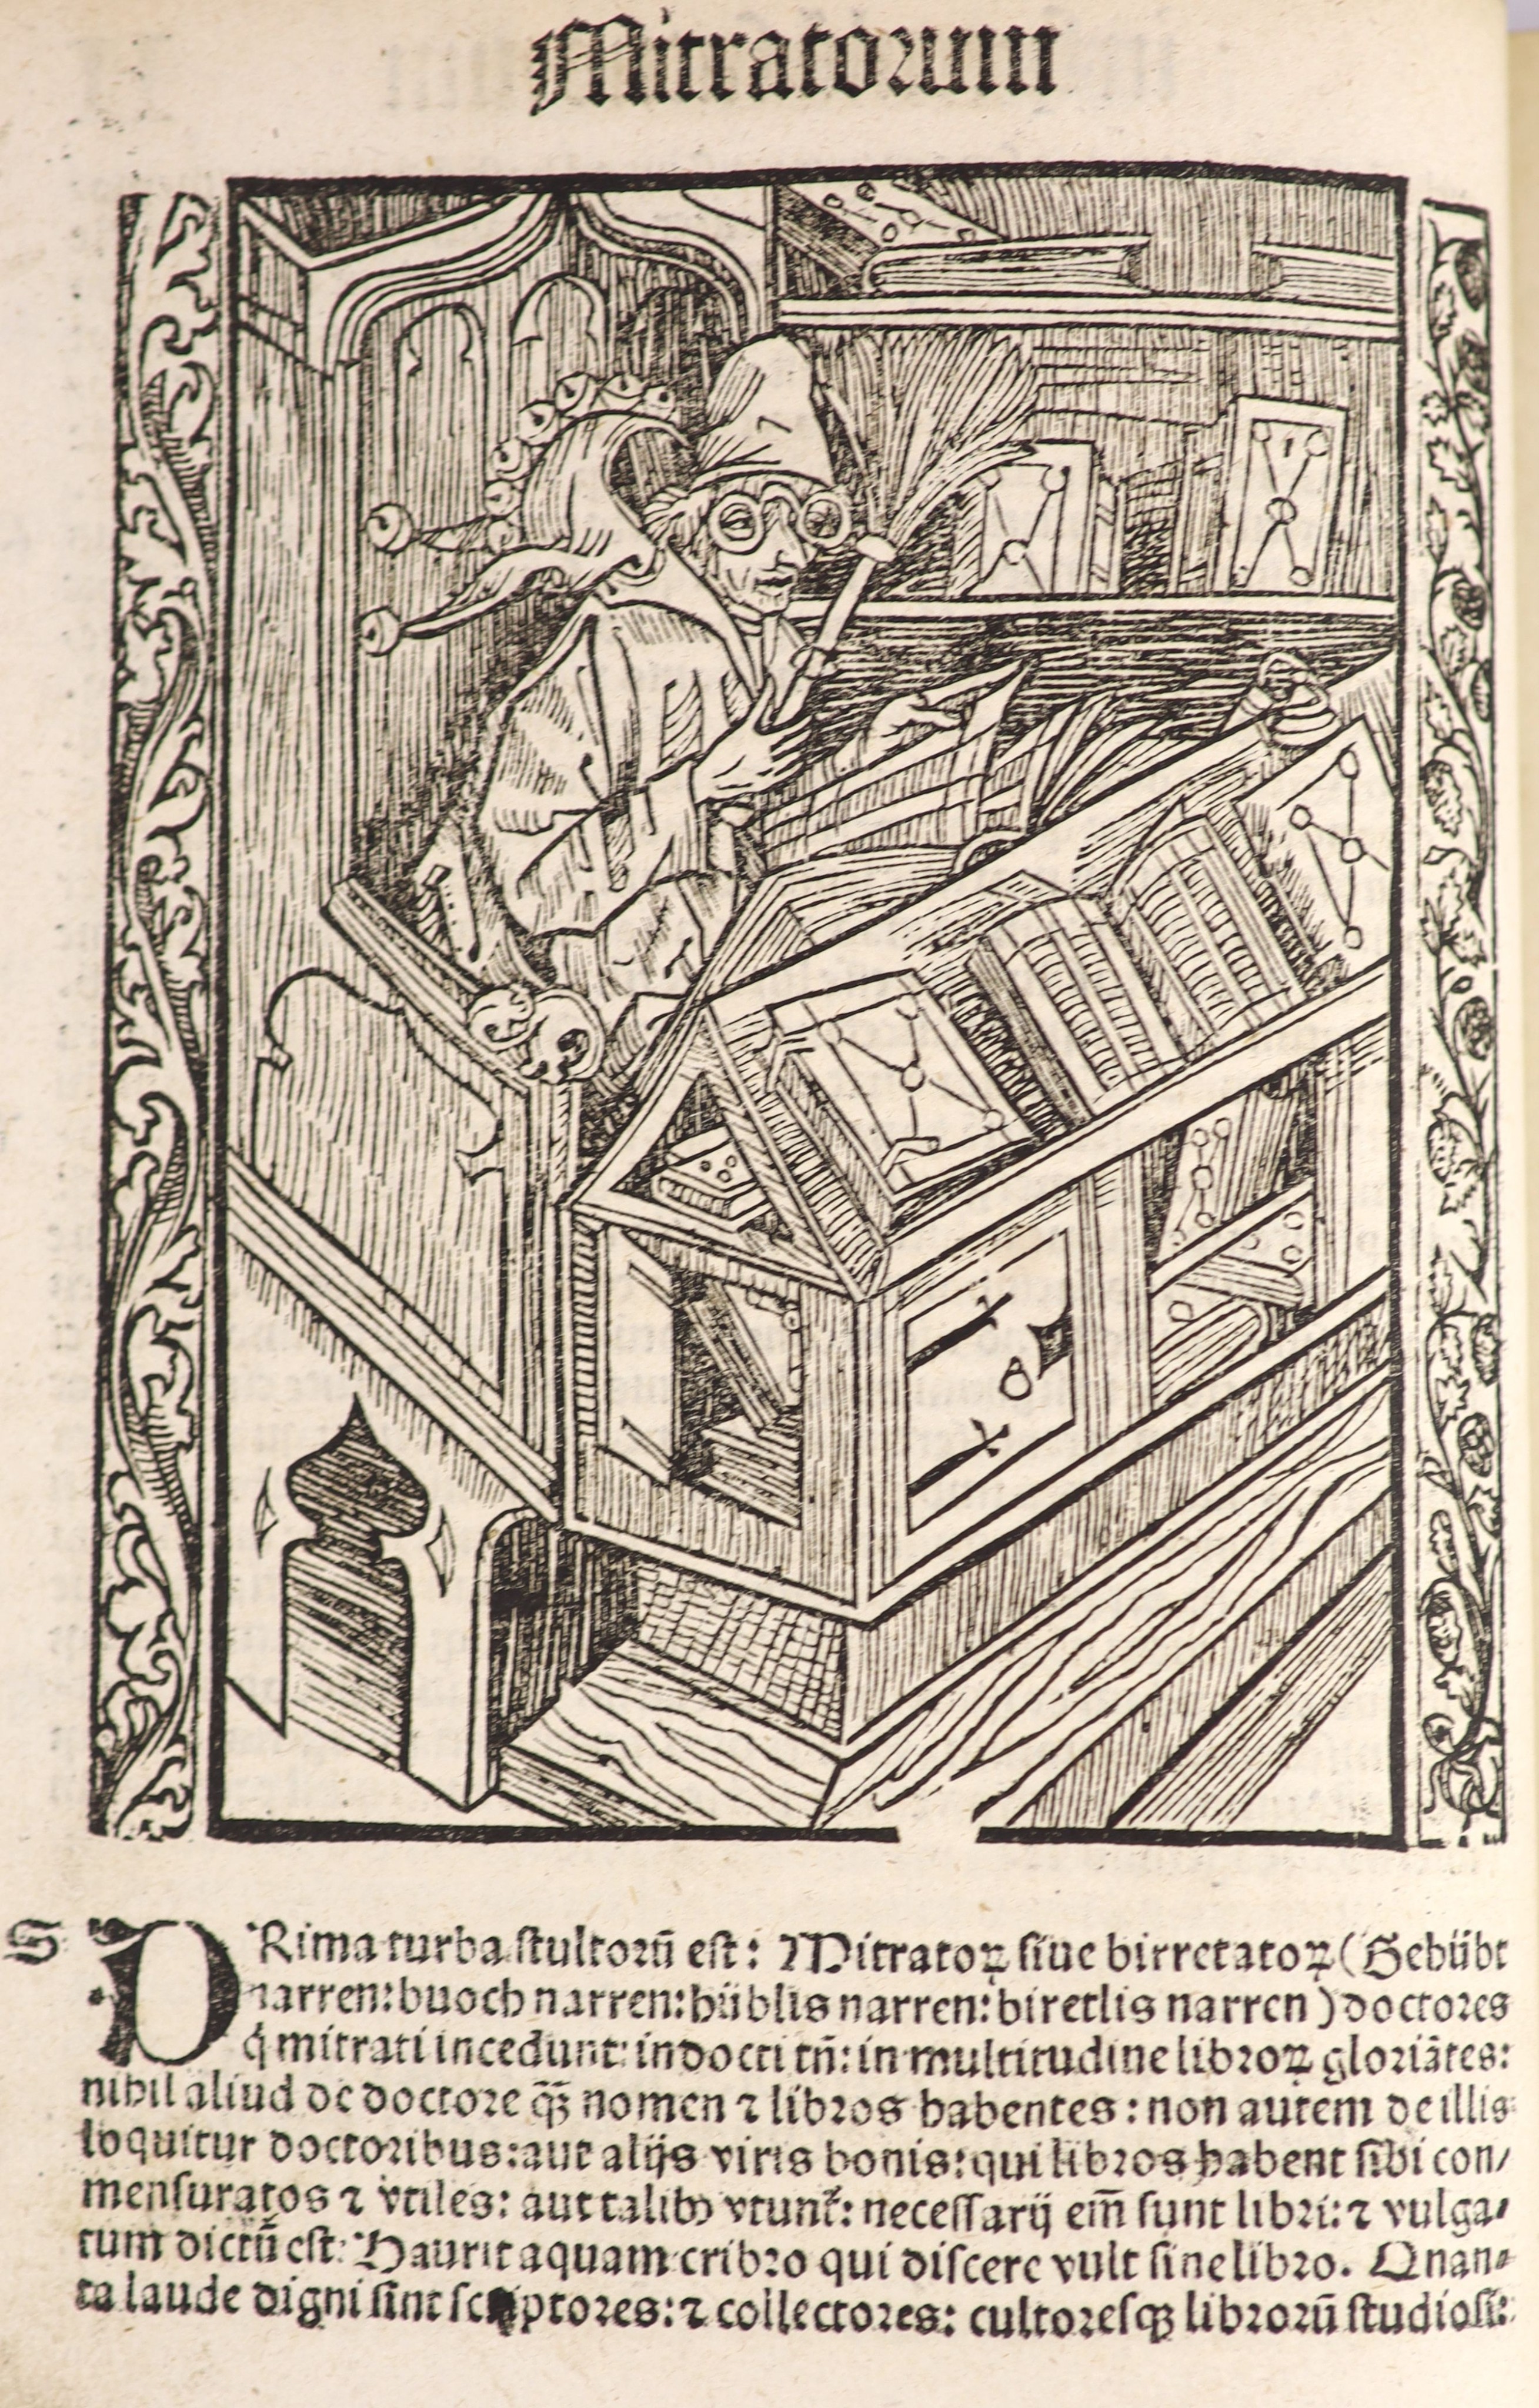 Geiler Von Kaiserberg, Johann. Navicula sive Speculu Fatuorum prestantissimi Sacrarum Literarum ...